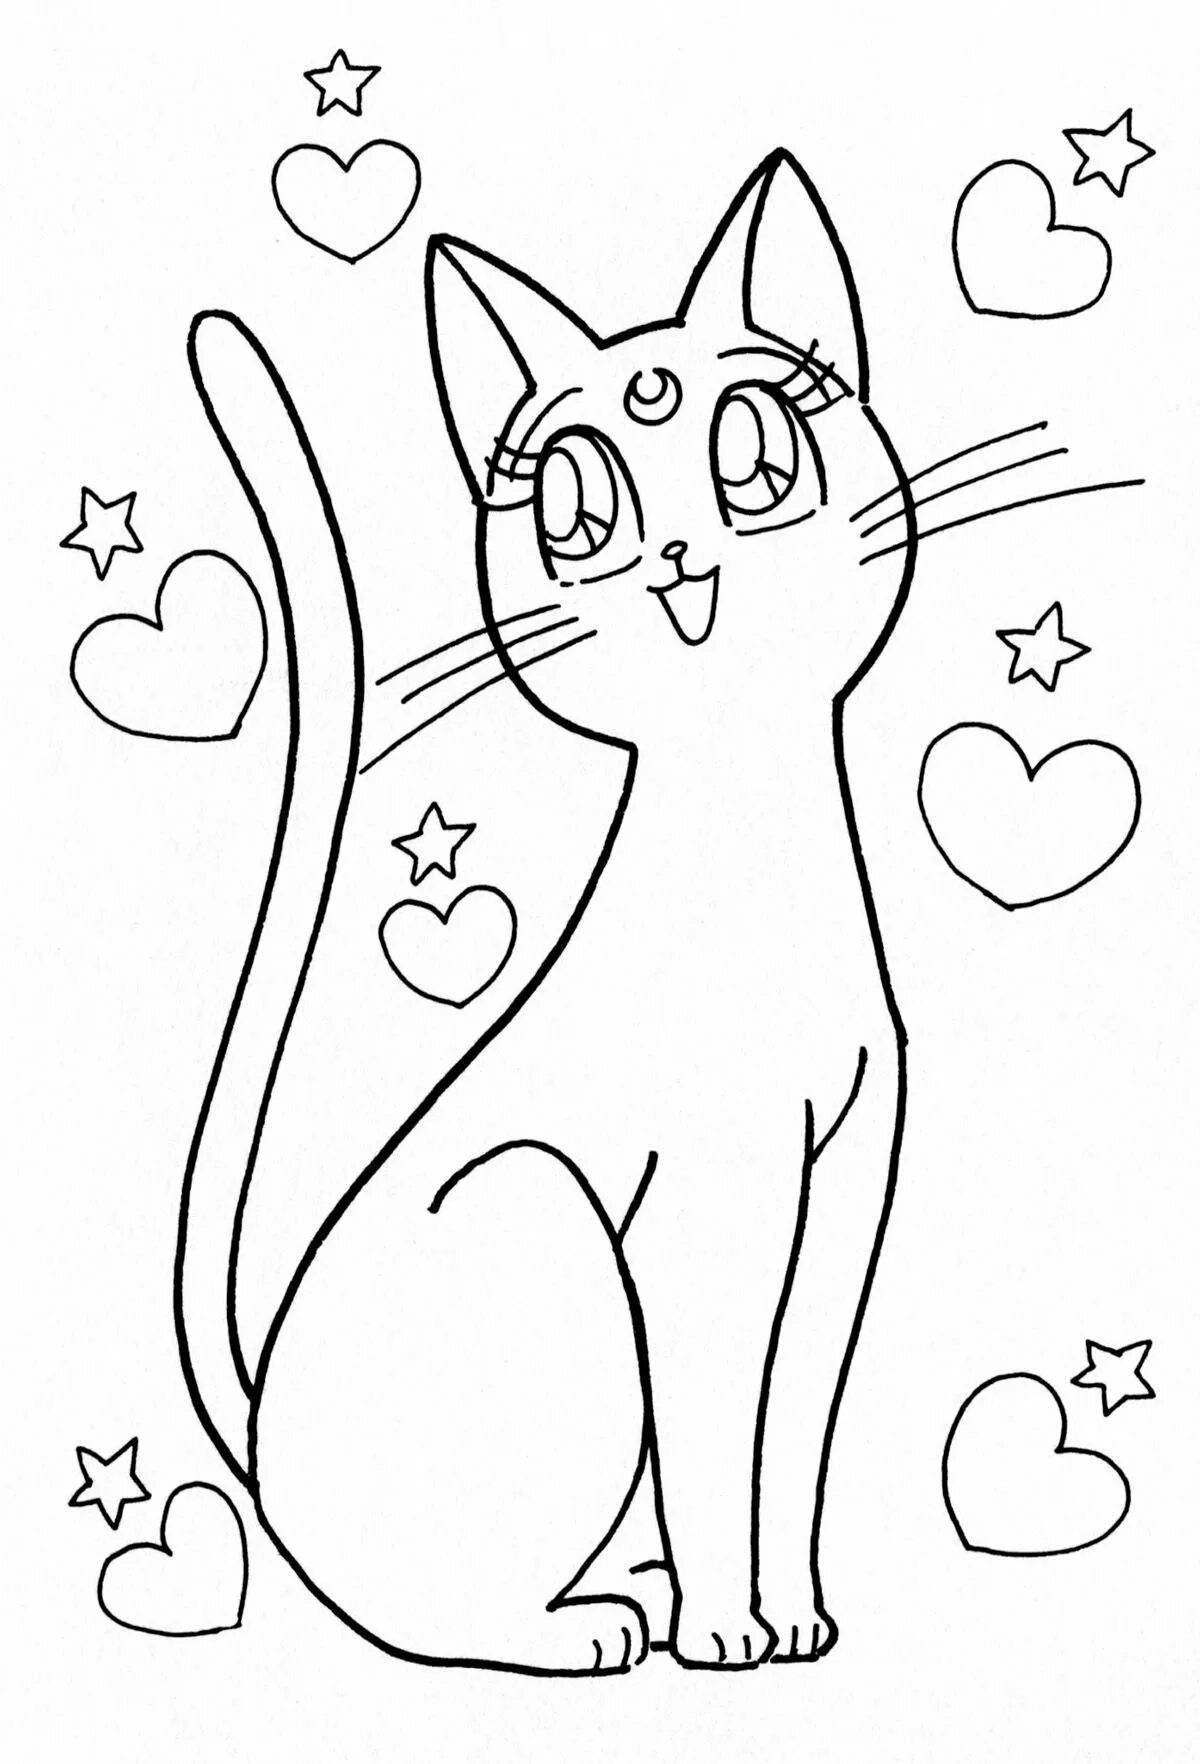 Мистическая раскраска для девочек 12 лет, милые коты